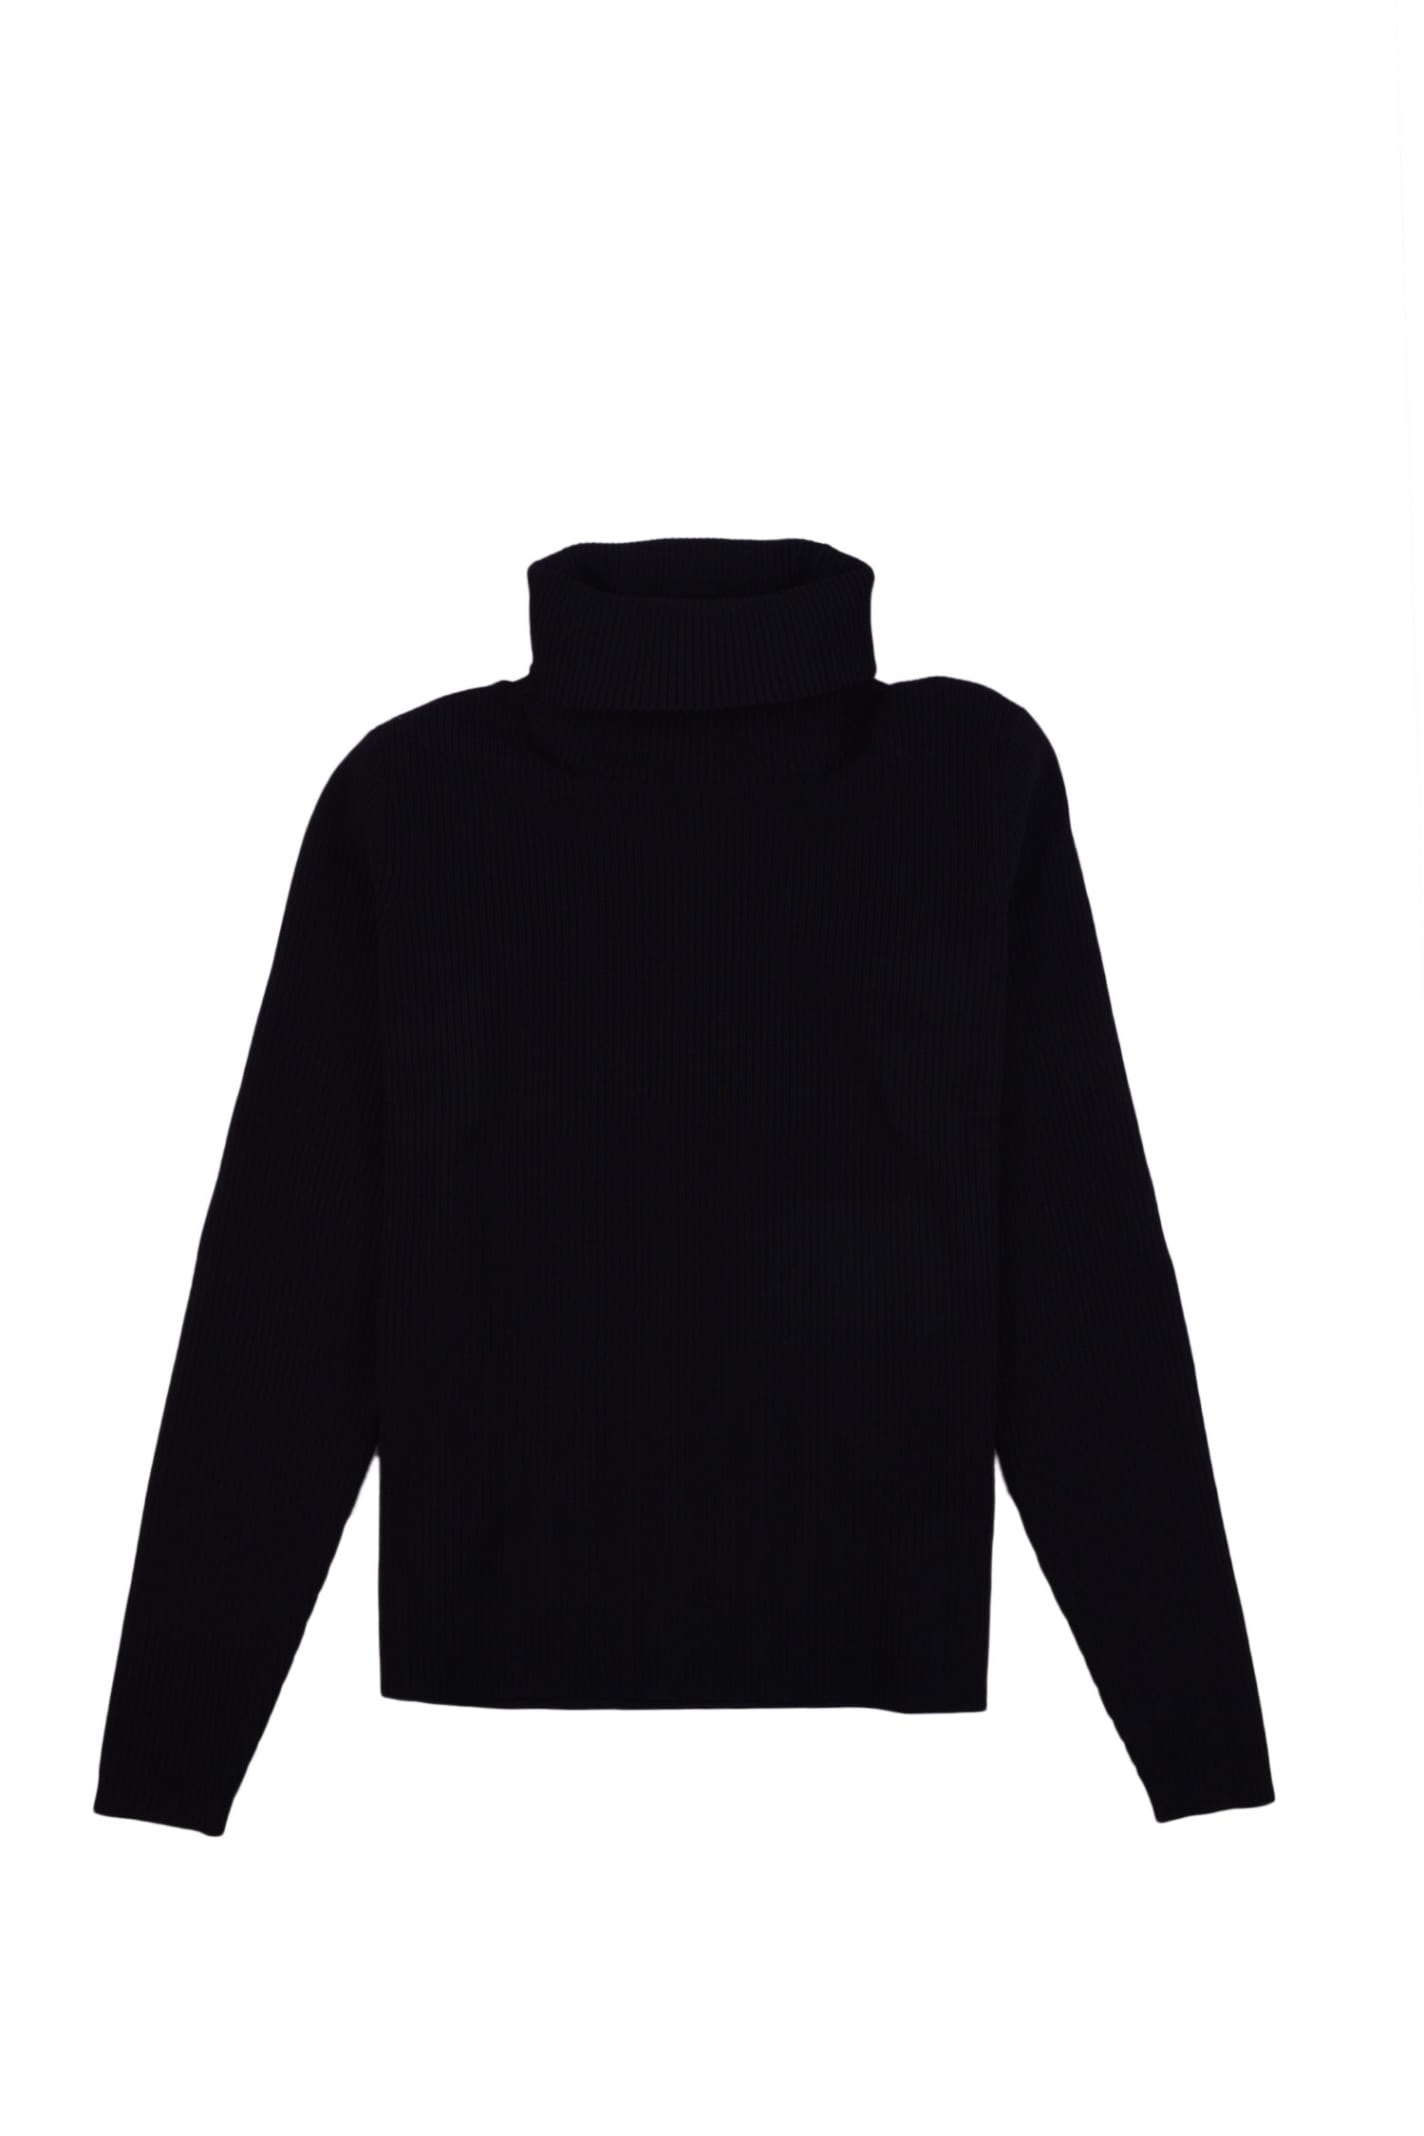 rrd - roberto ricci design sweater